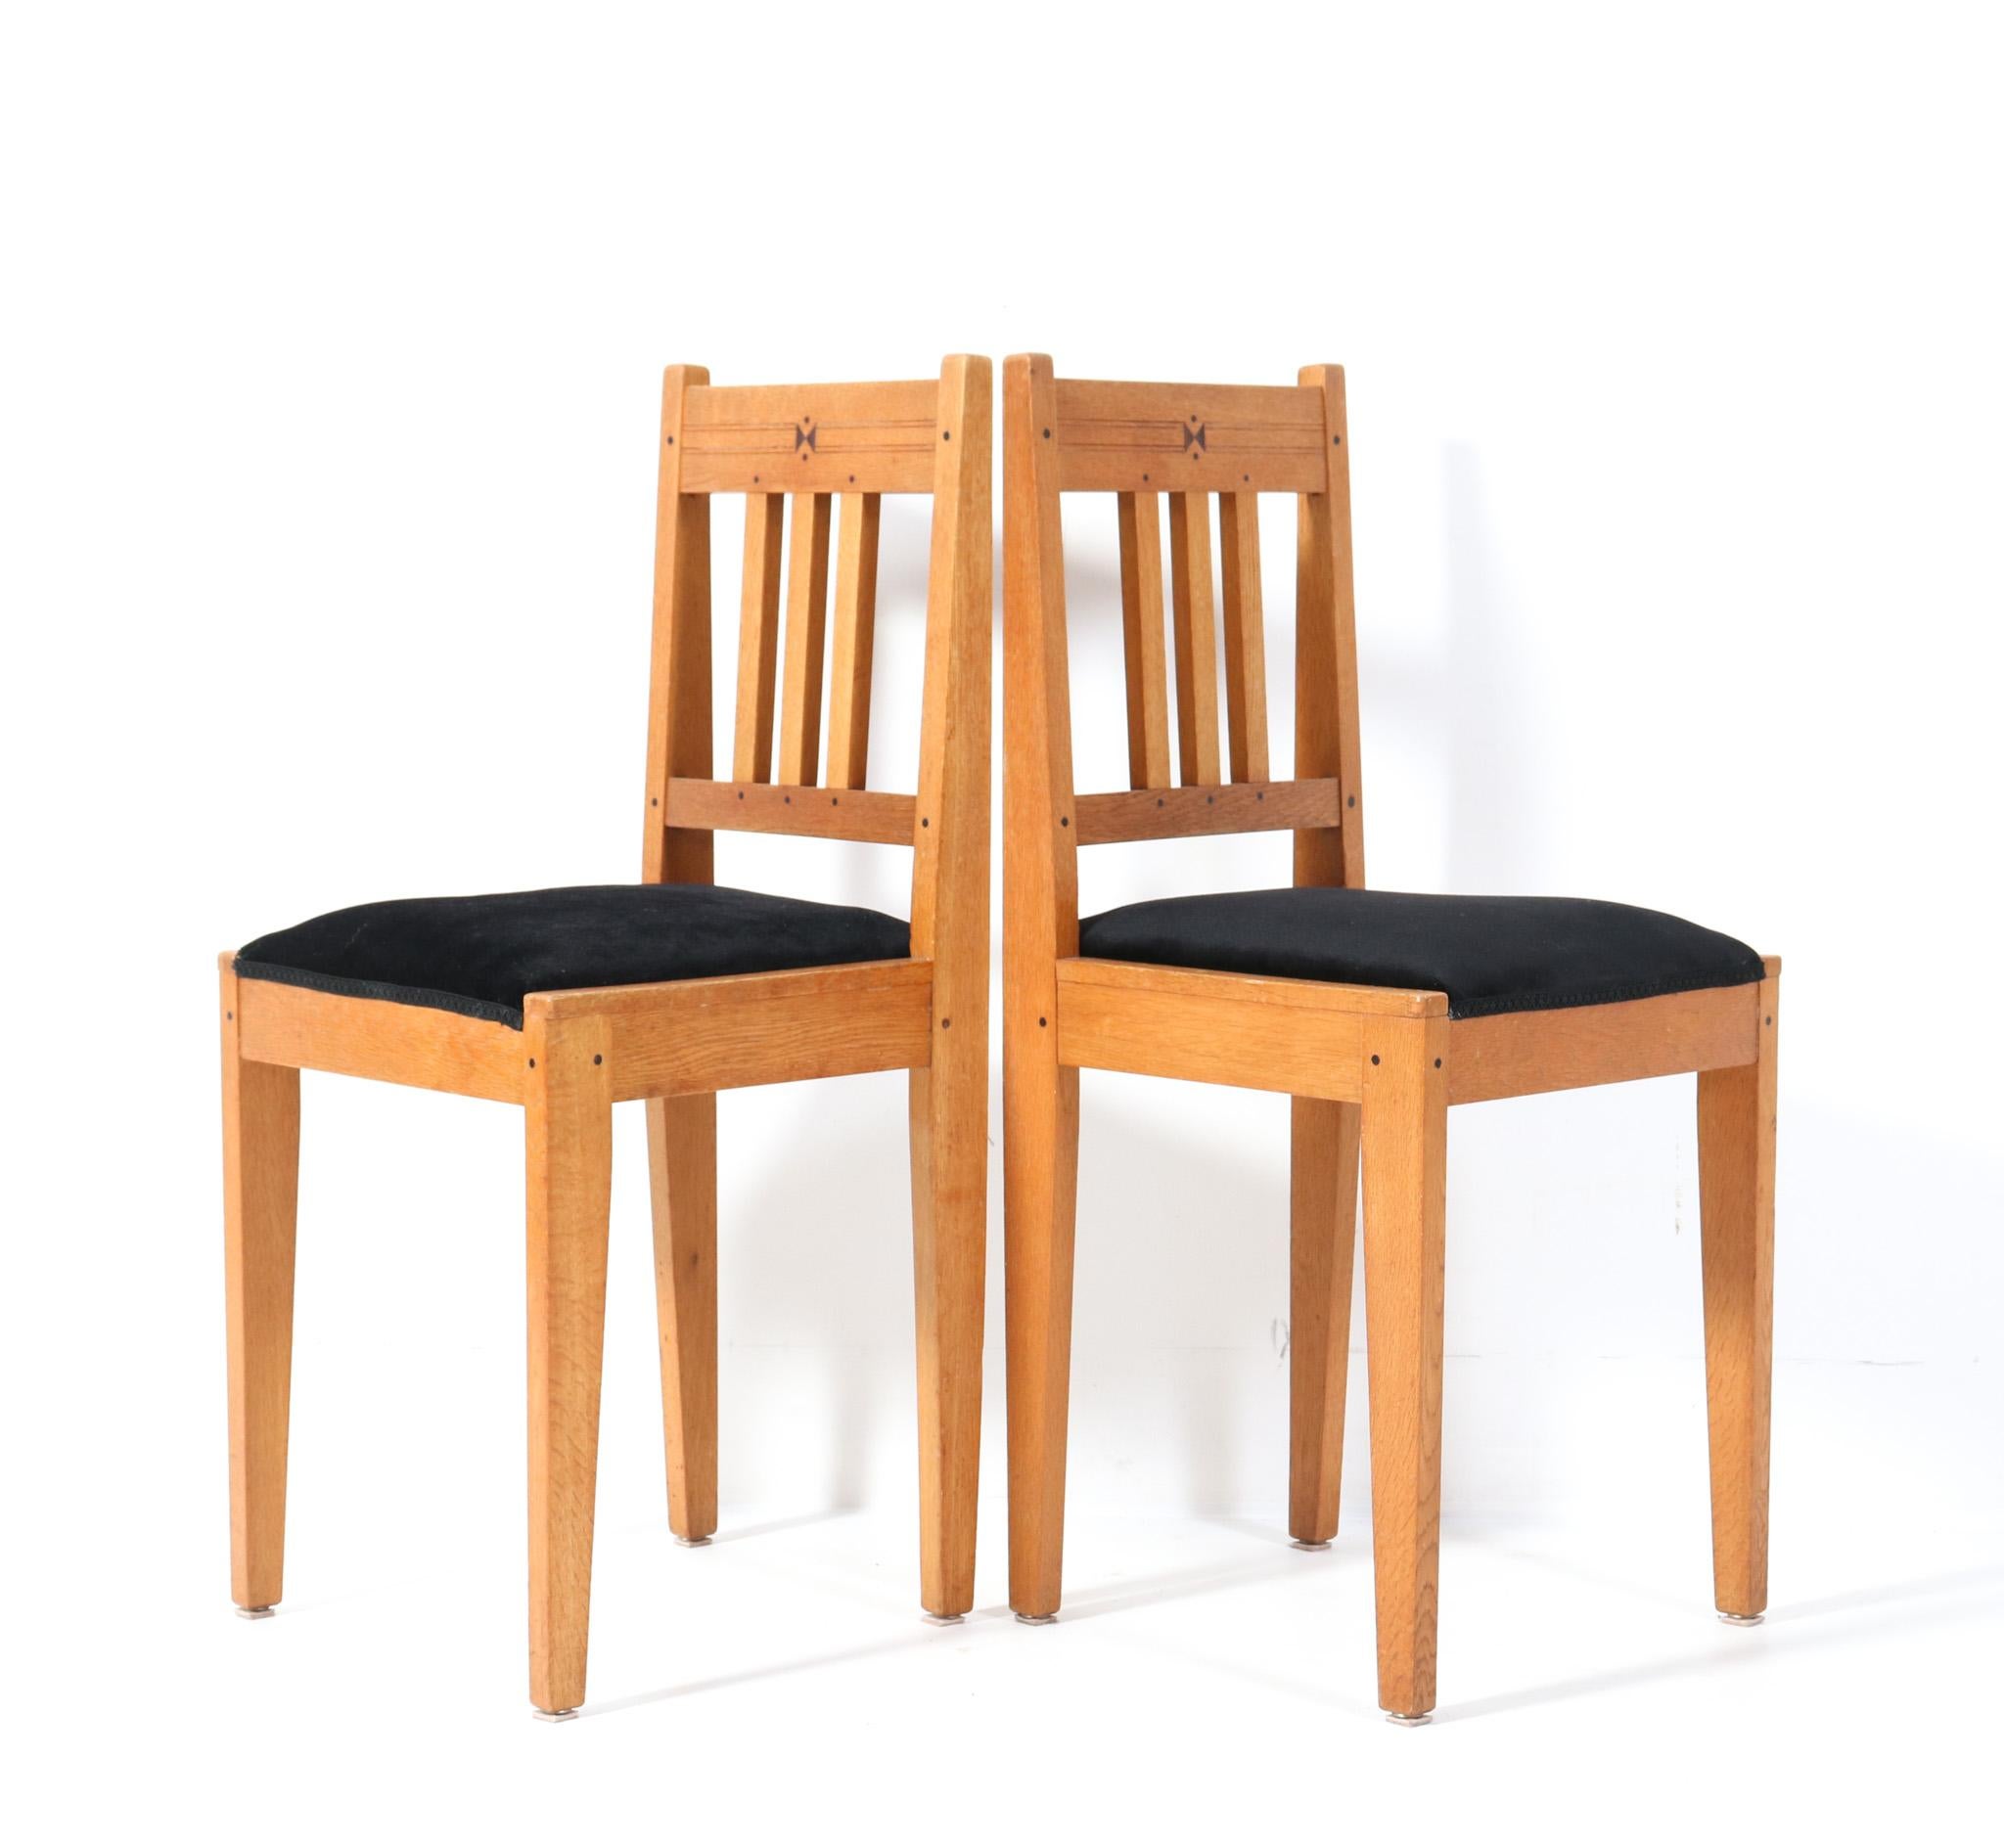 Magnifique et rare paire de chaises d'appoint Arts & Crafts Art Nouveau.
Design par Jac. van den Bosch.
Un design néerlandais saisissant des années 1900.
Cadres en chêne massif avec broches décoratives en ébène massif.
Les deux sièges sont